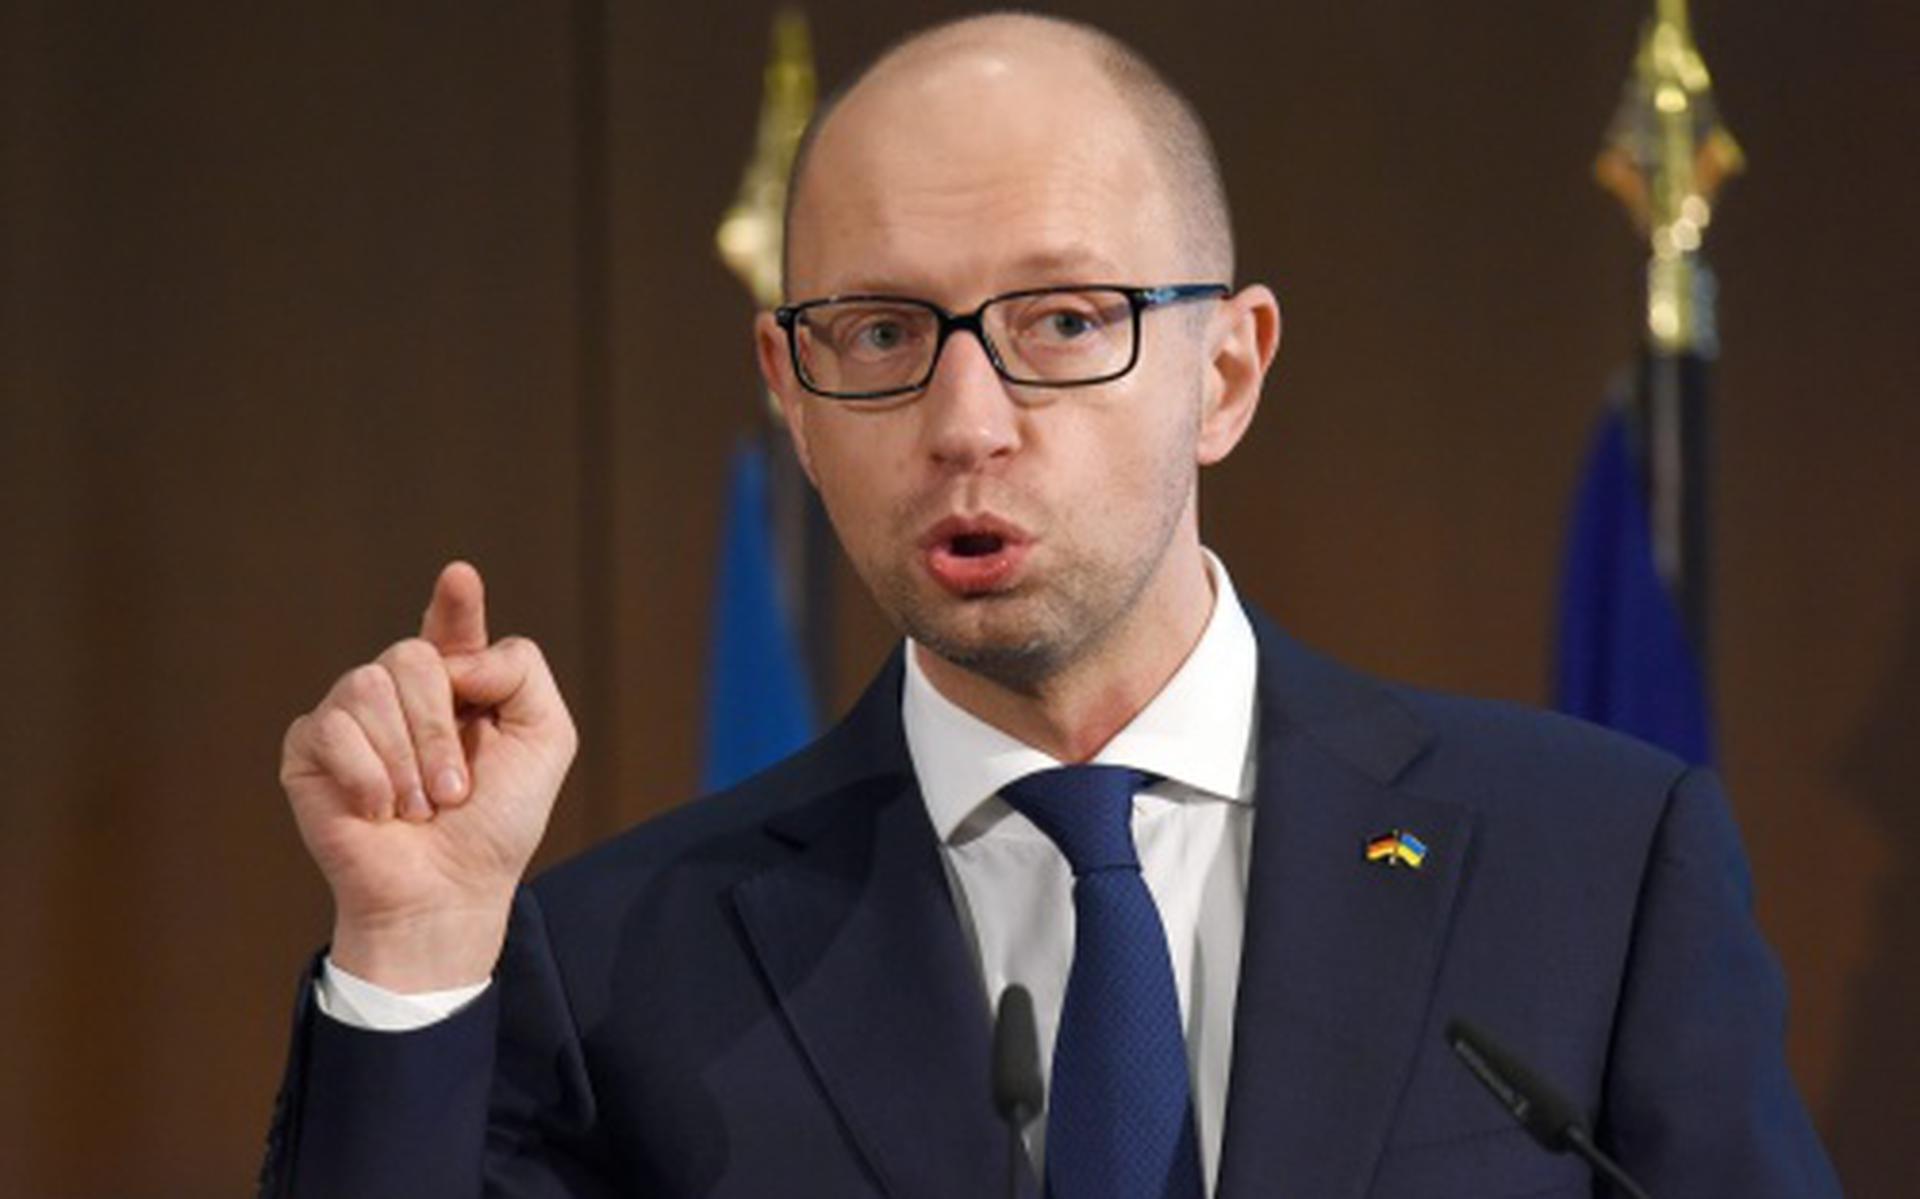 'Akkoord over nieuwe coalitie Oekraïne'